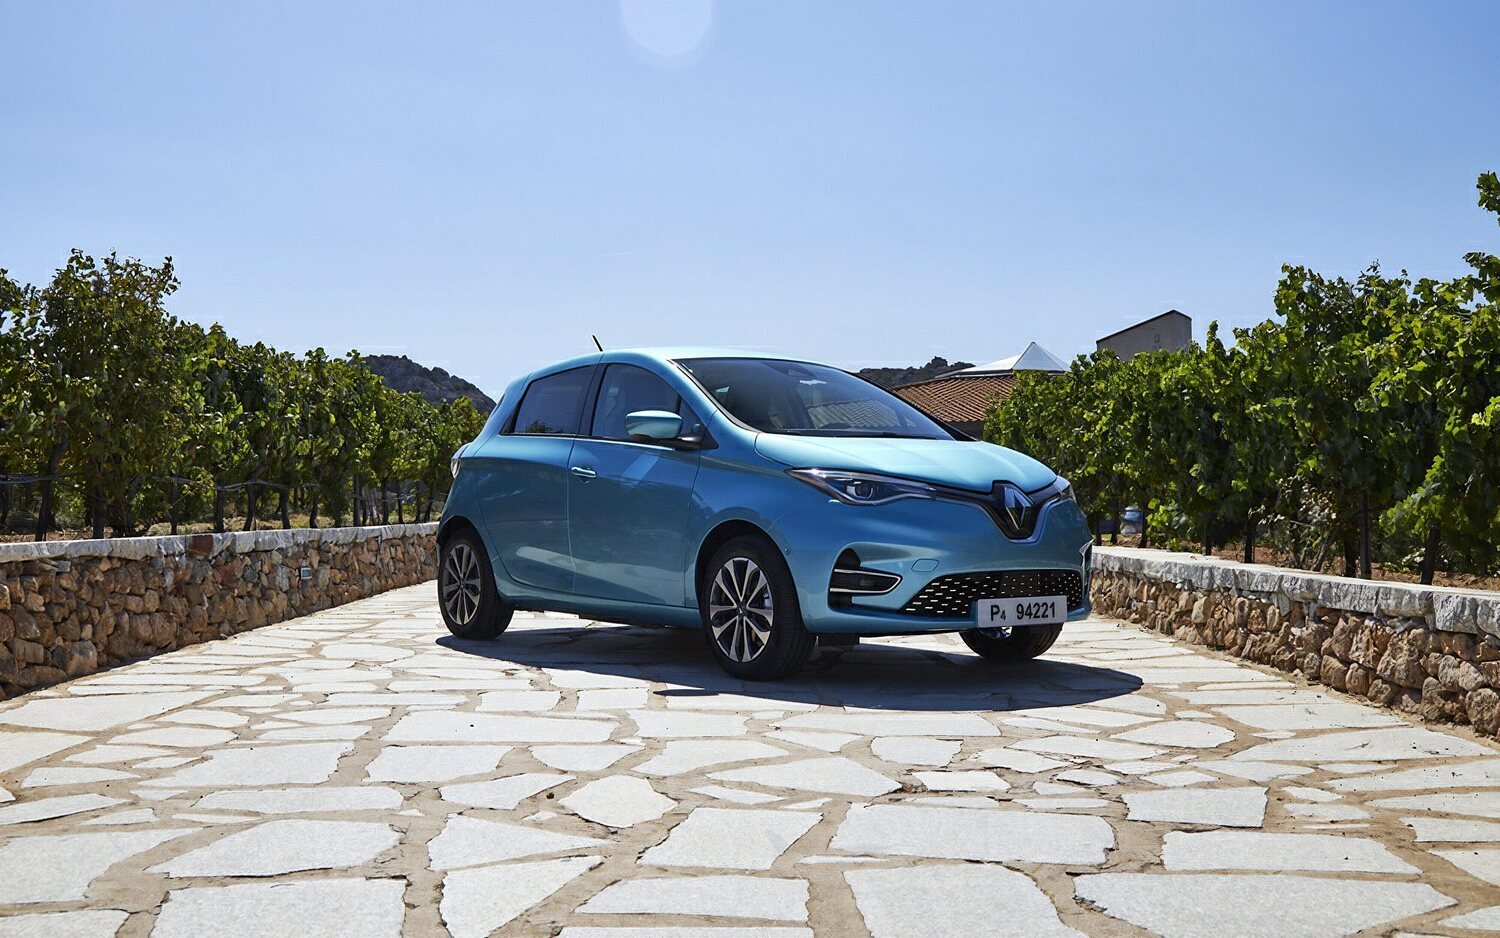 Renault ZOE dejará de producirse en los próximos meses